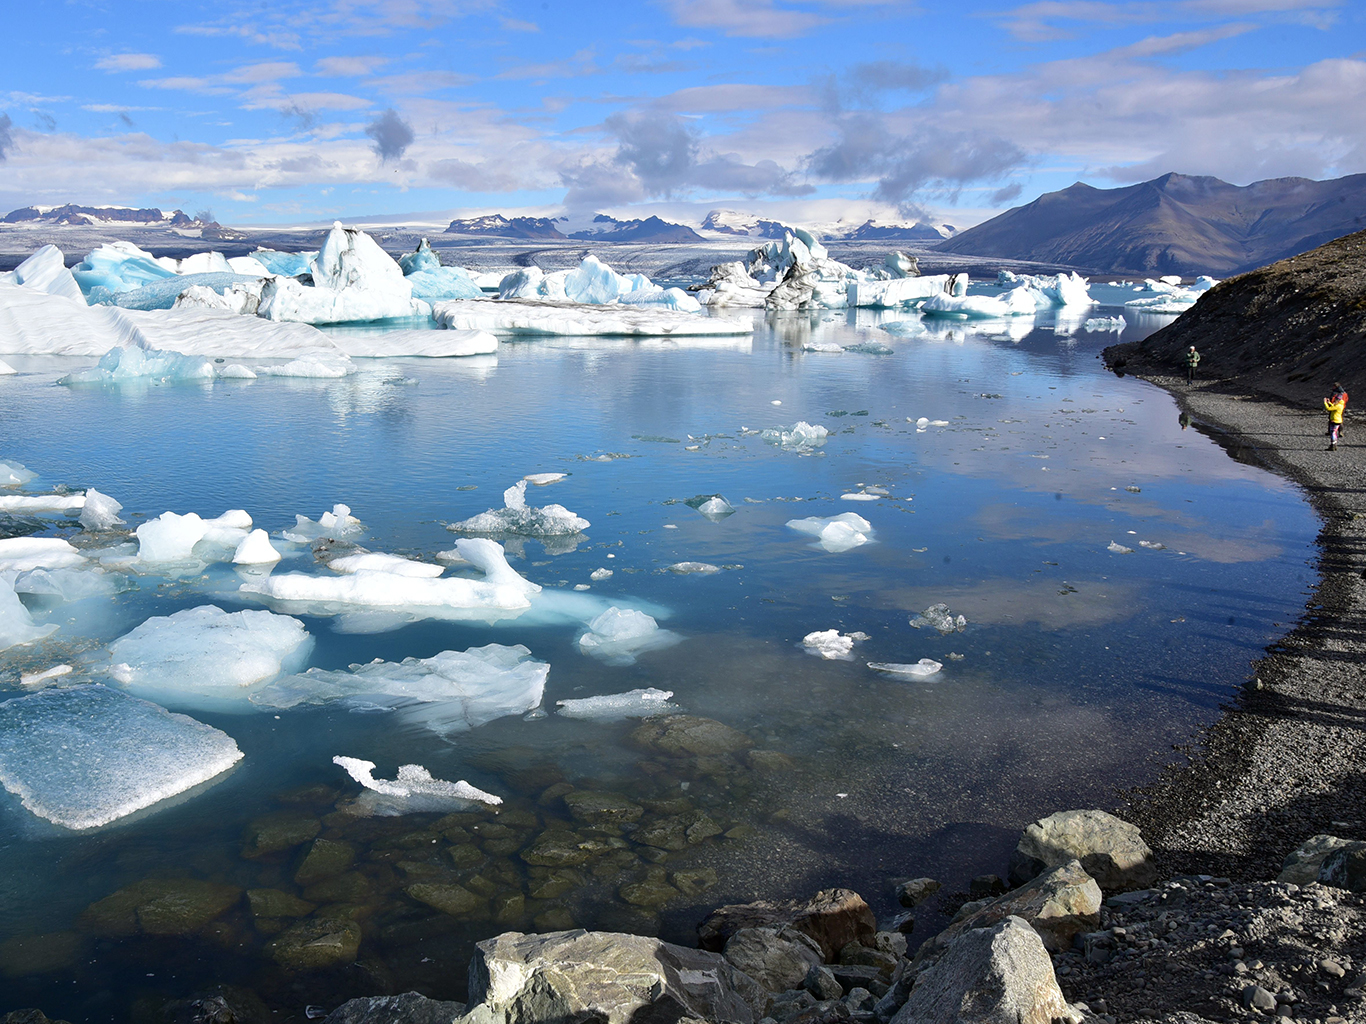 Po hladině jezera Jökulsárlón plují zářivě modré ledovcové kry